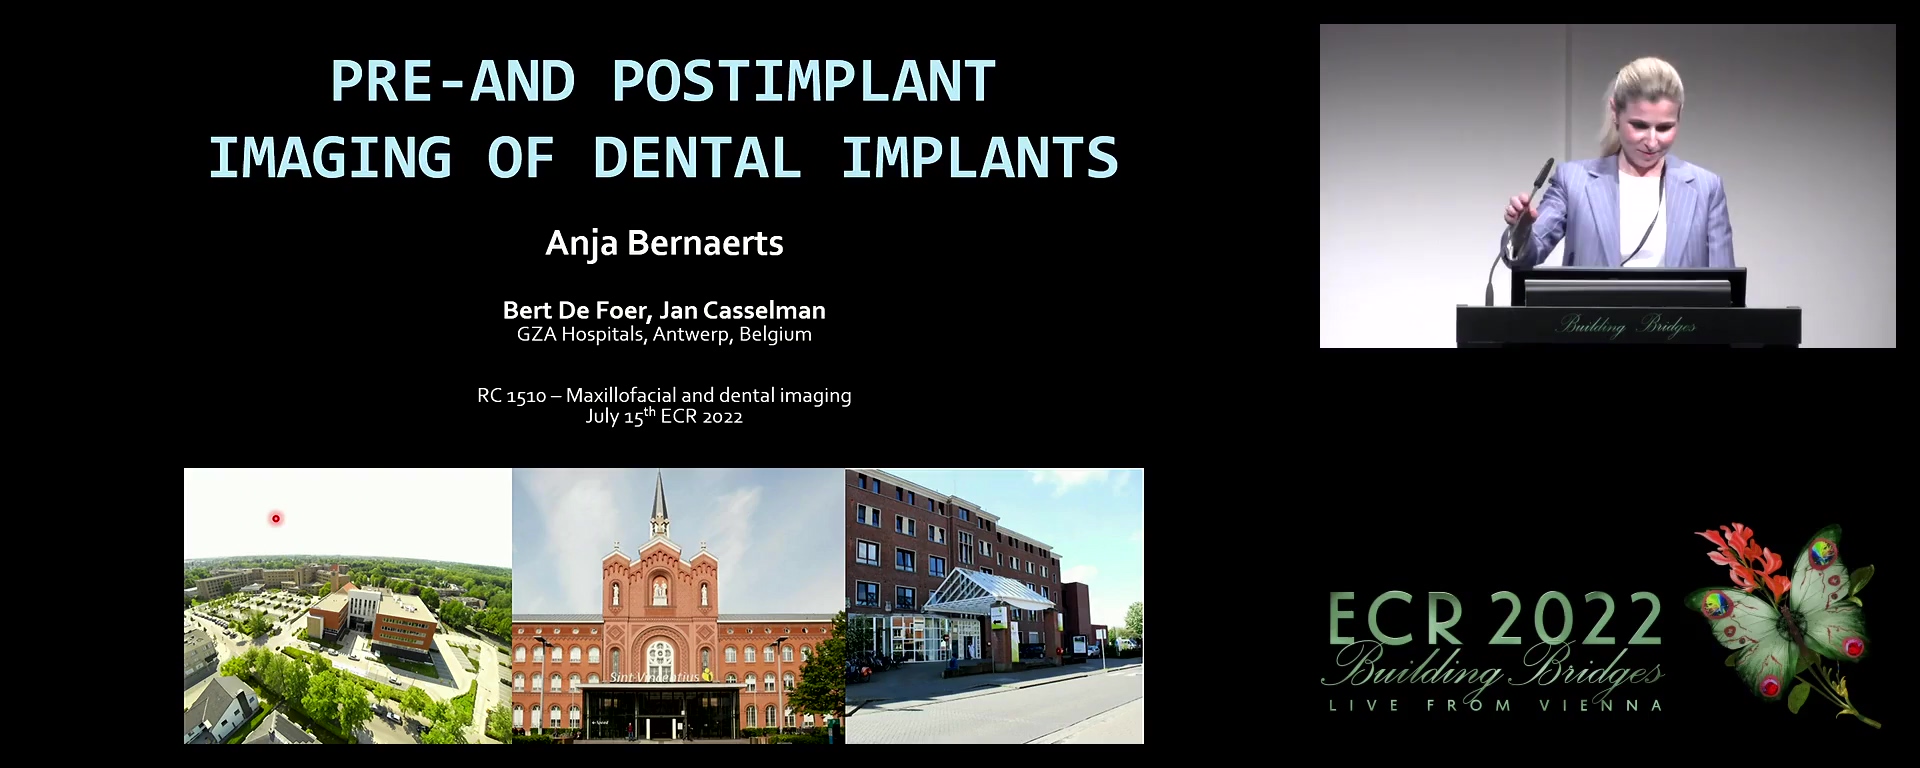 Pre-and postimplant imaging of dental implants - Anja Bernaerts, Antwerp / BE